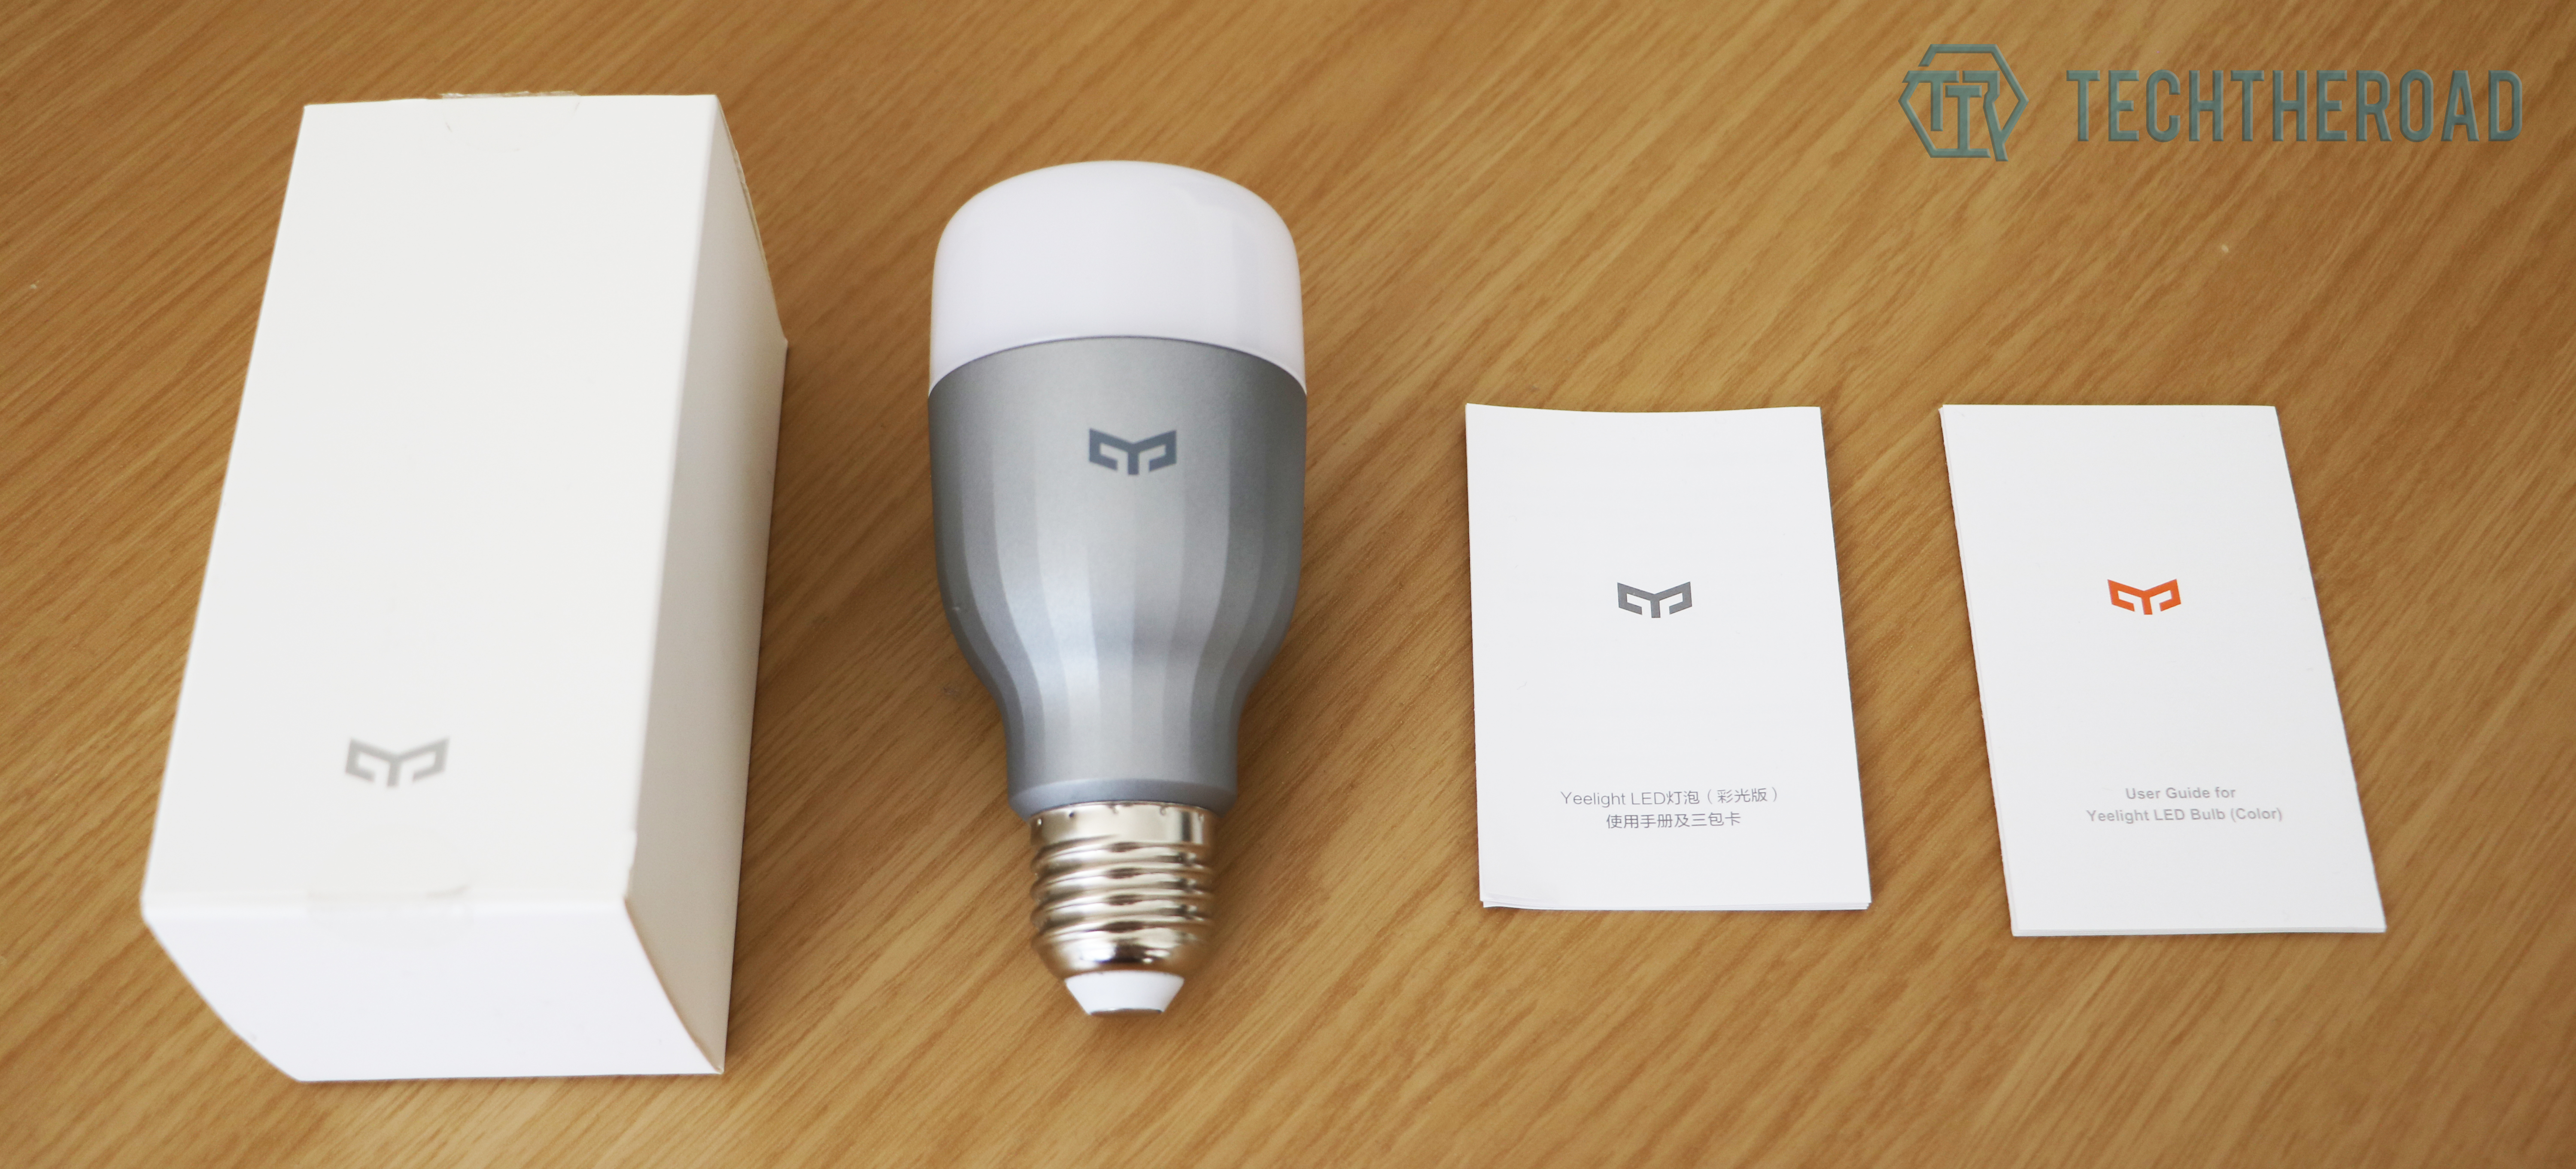 TEST - Notre avis sur l'Ampoule Connectée Xiaomi Yeelight E27